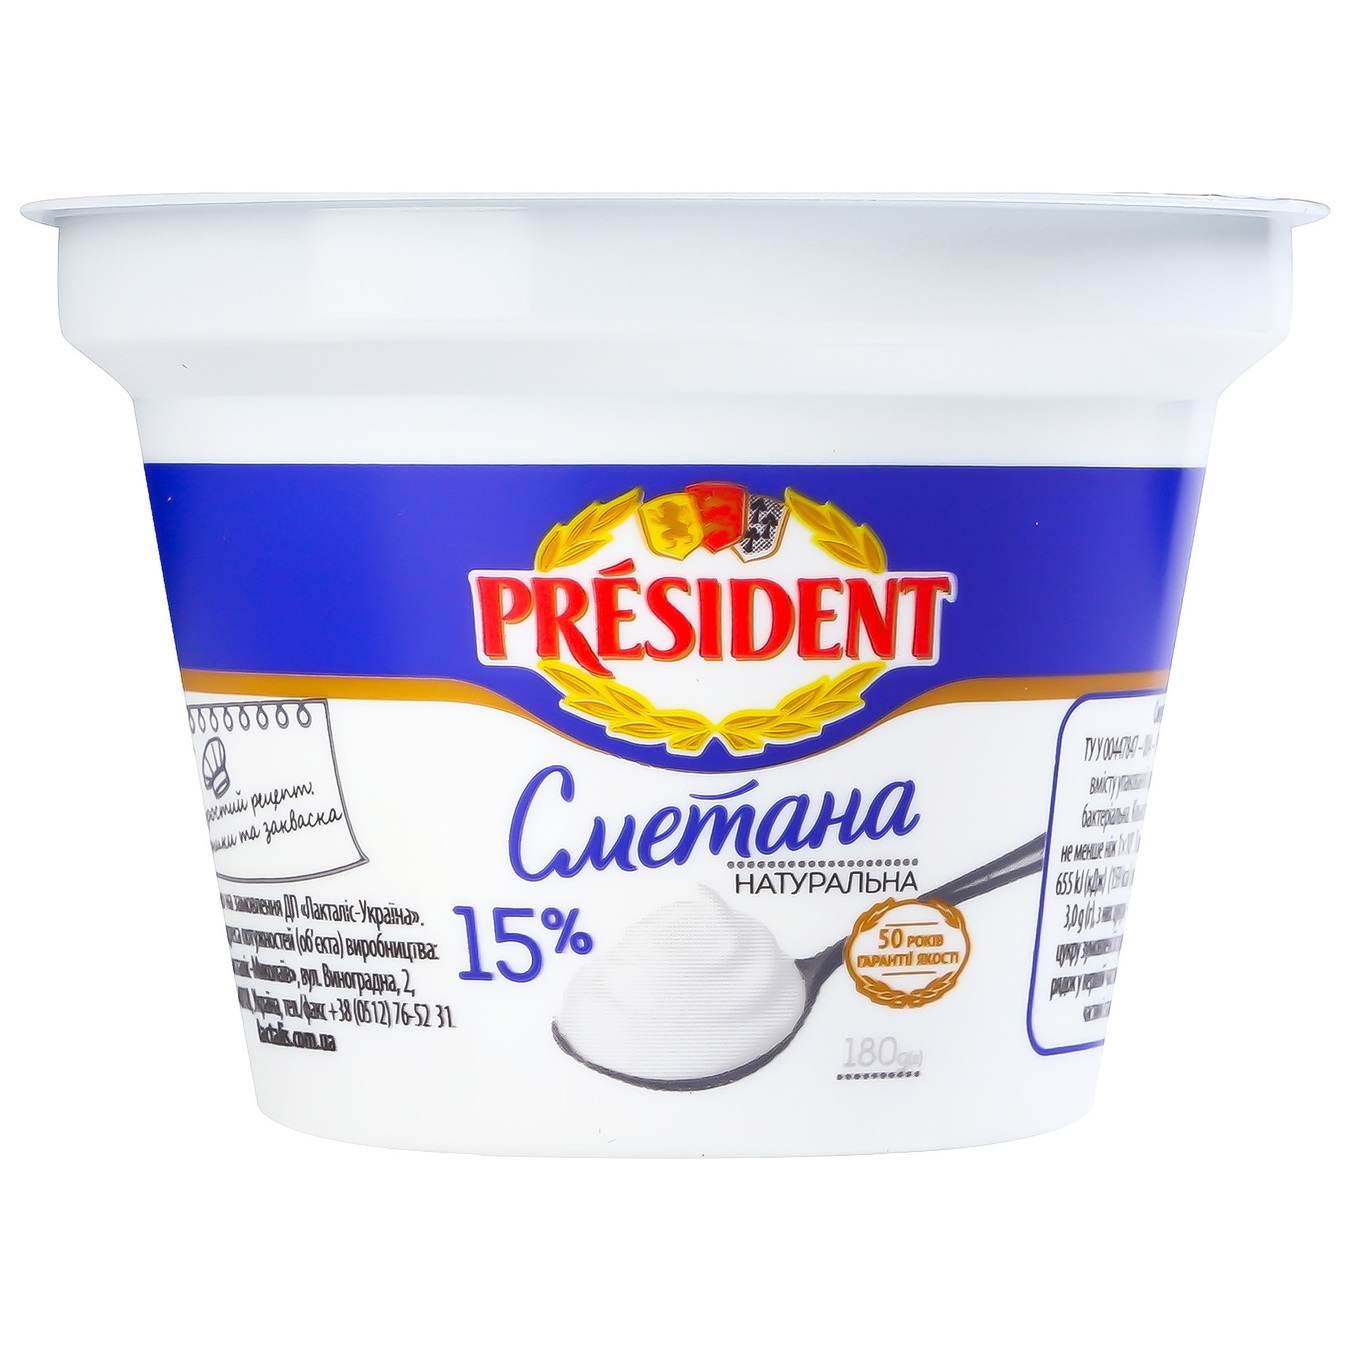 President Sour Cream 15% 180g 6